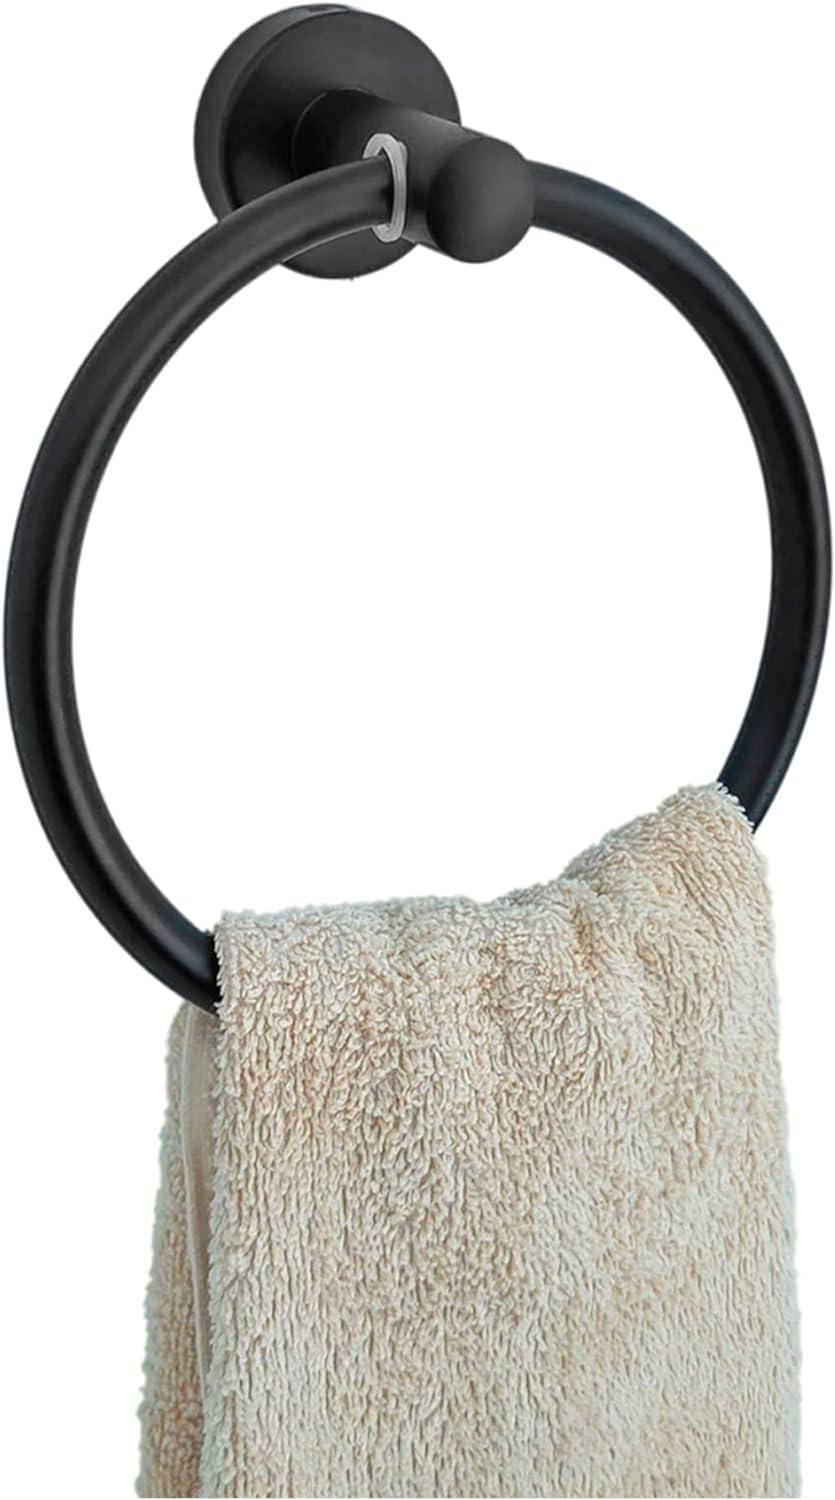 BVL Toallero negro, soporte para toallas de mano para baño, cocina, to -  VIRTUAL MUEBLES